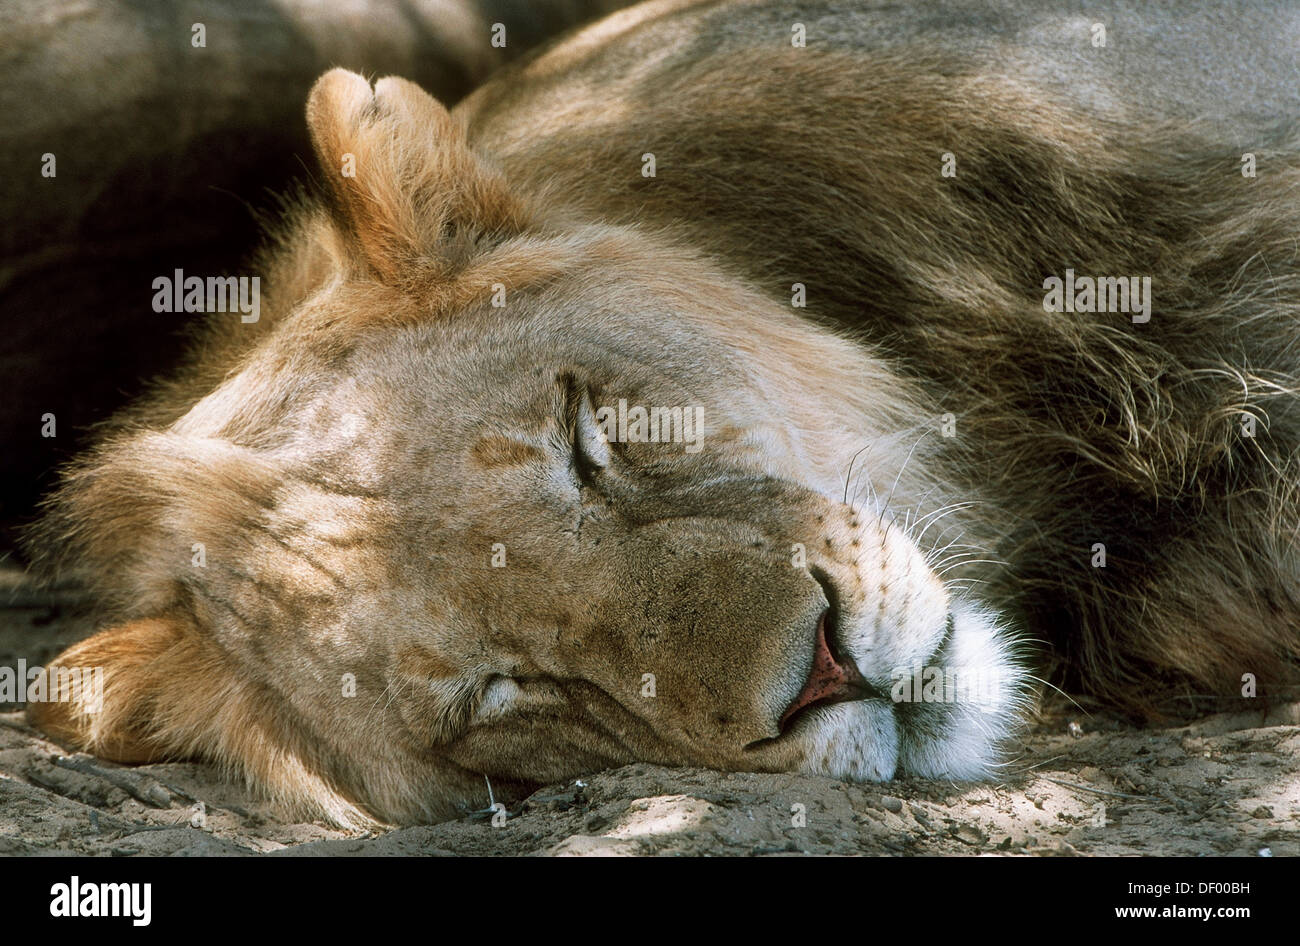 Lion (Panthera leo), dormir, Nossob, fleuve Nossob, Afrique du Sud Banque D'Images